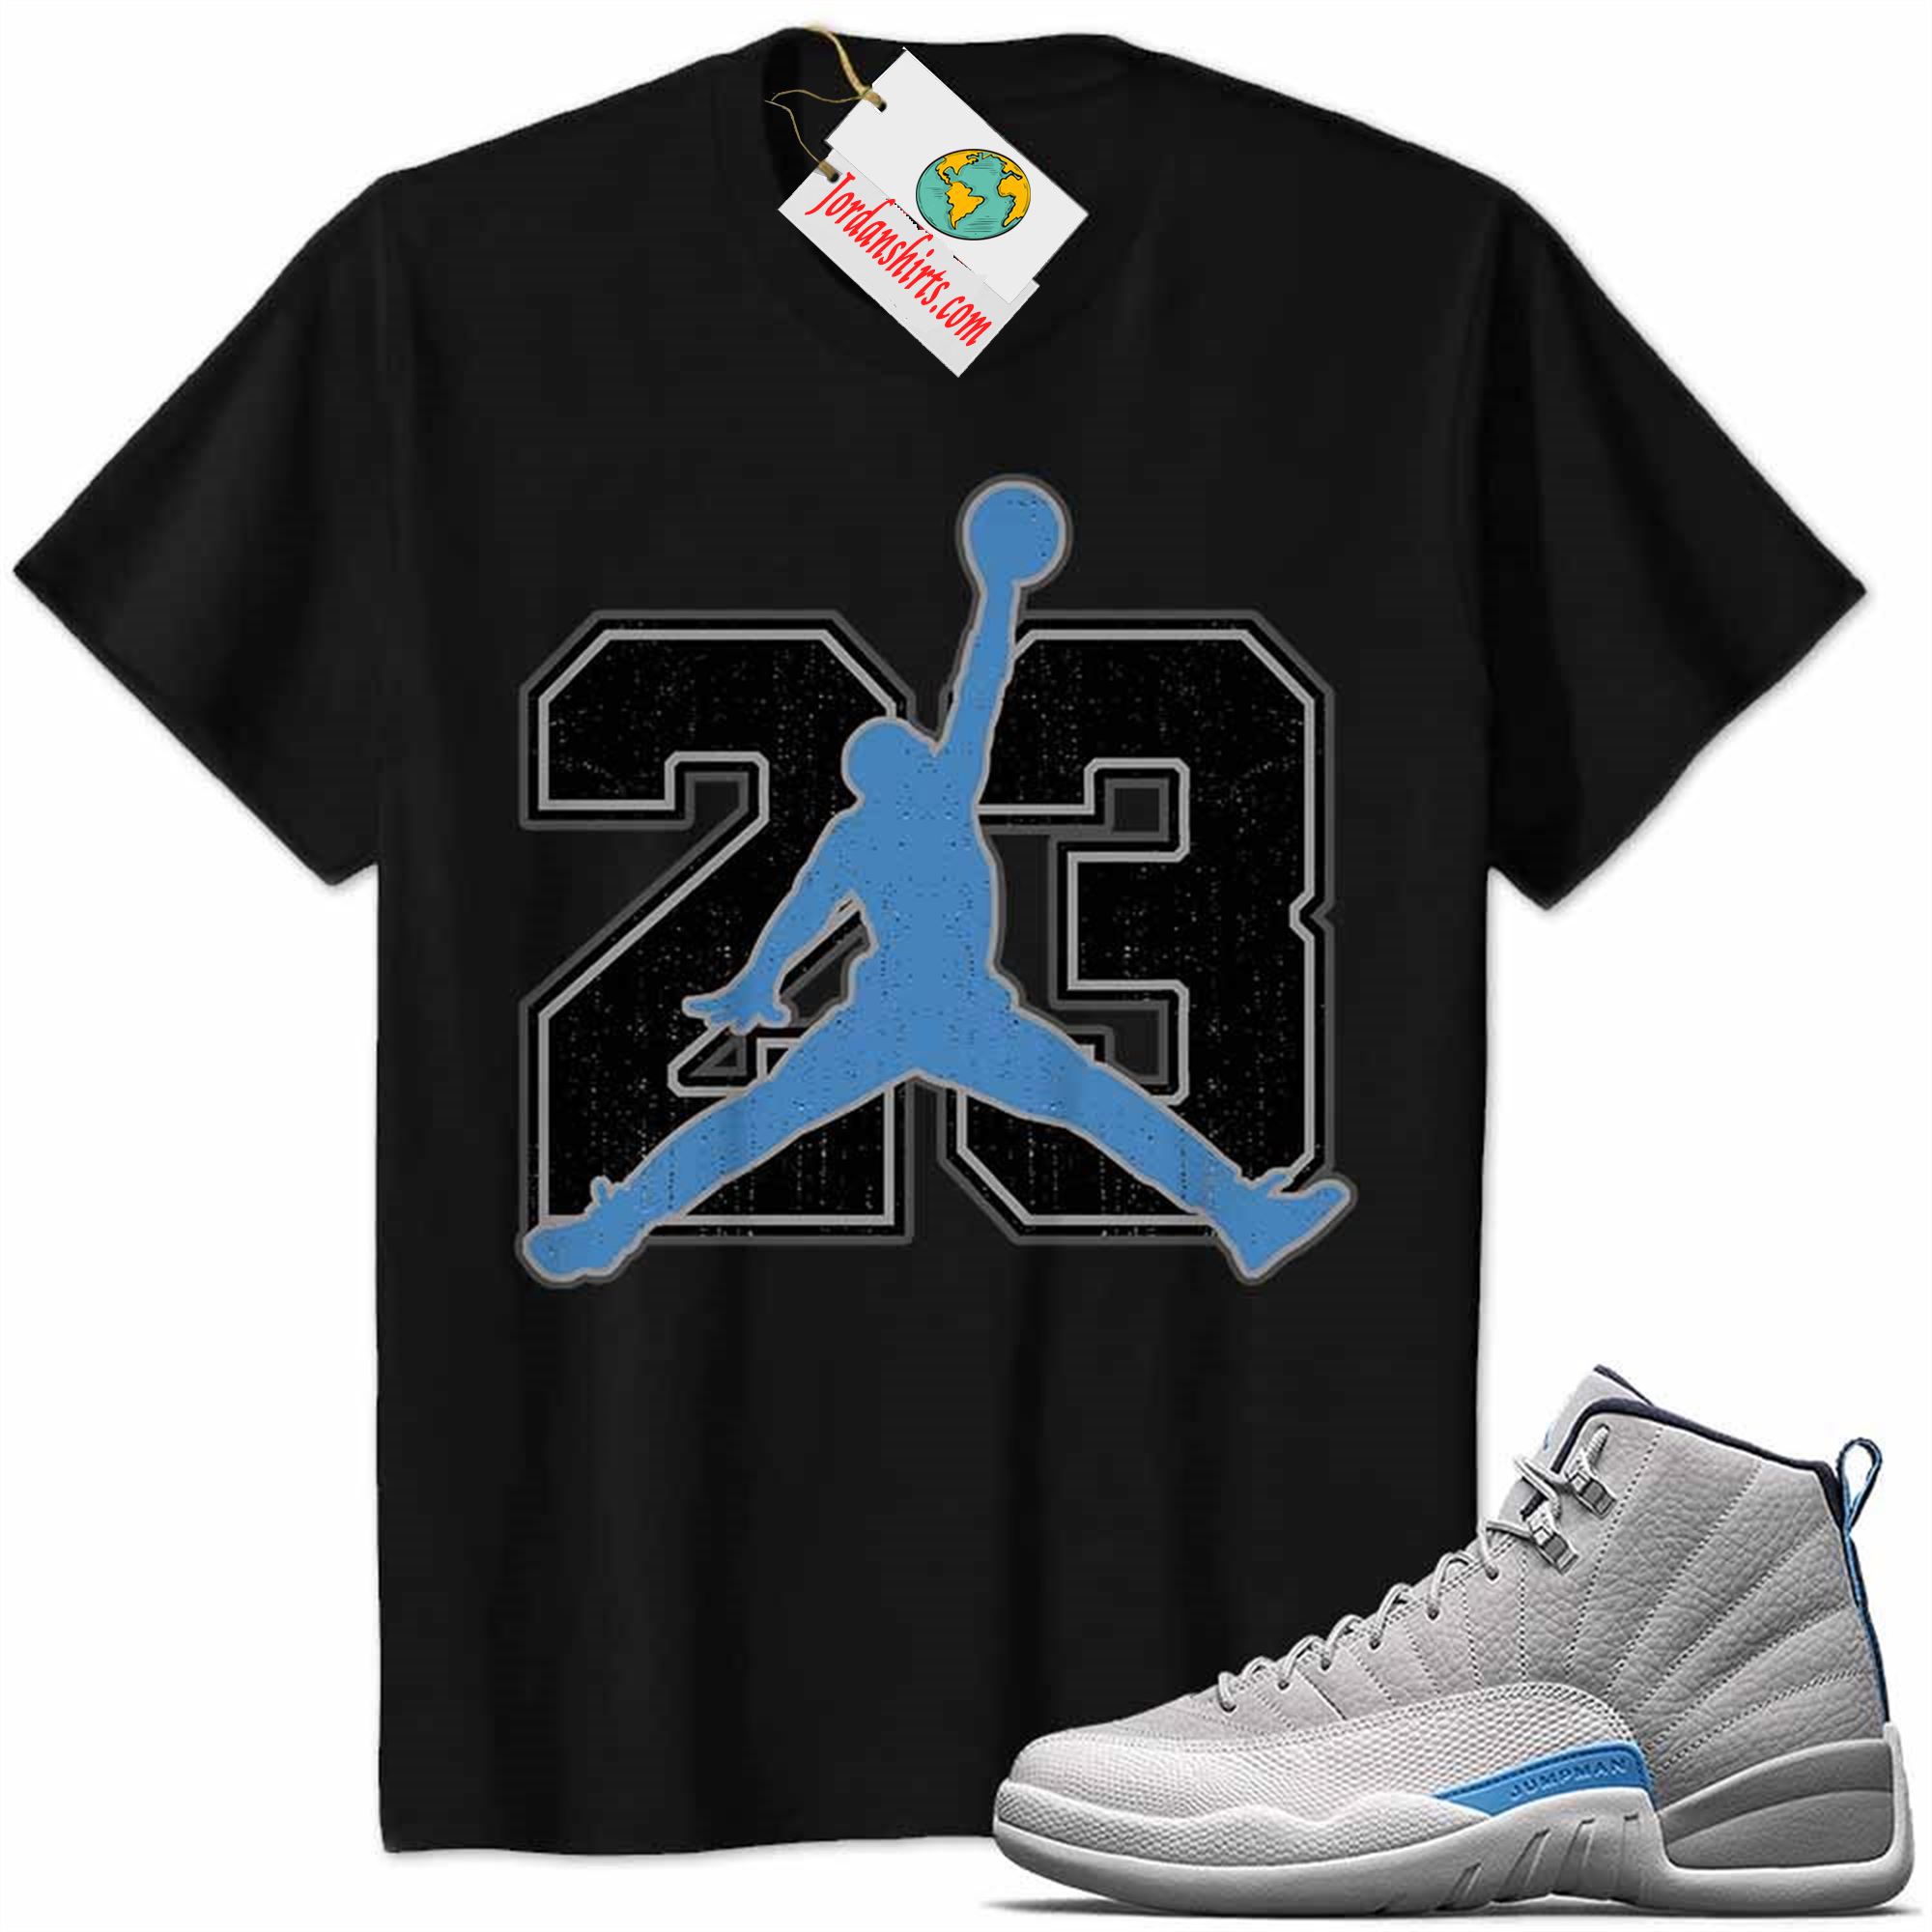 Jordan 12 Shirt, Jordan 12 Wolf Grey Shirt Jumpman No23 Black Size Up To 5xl